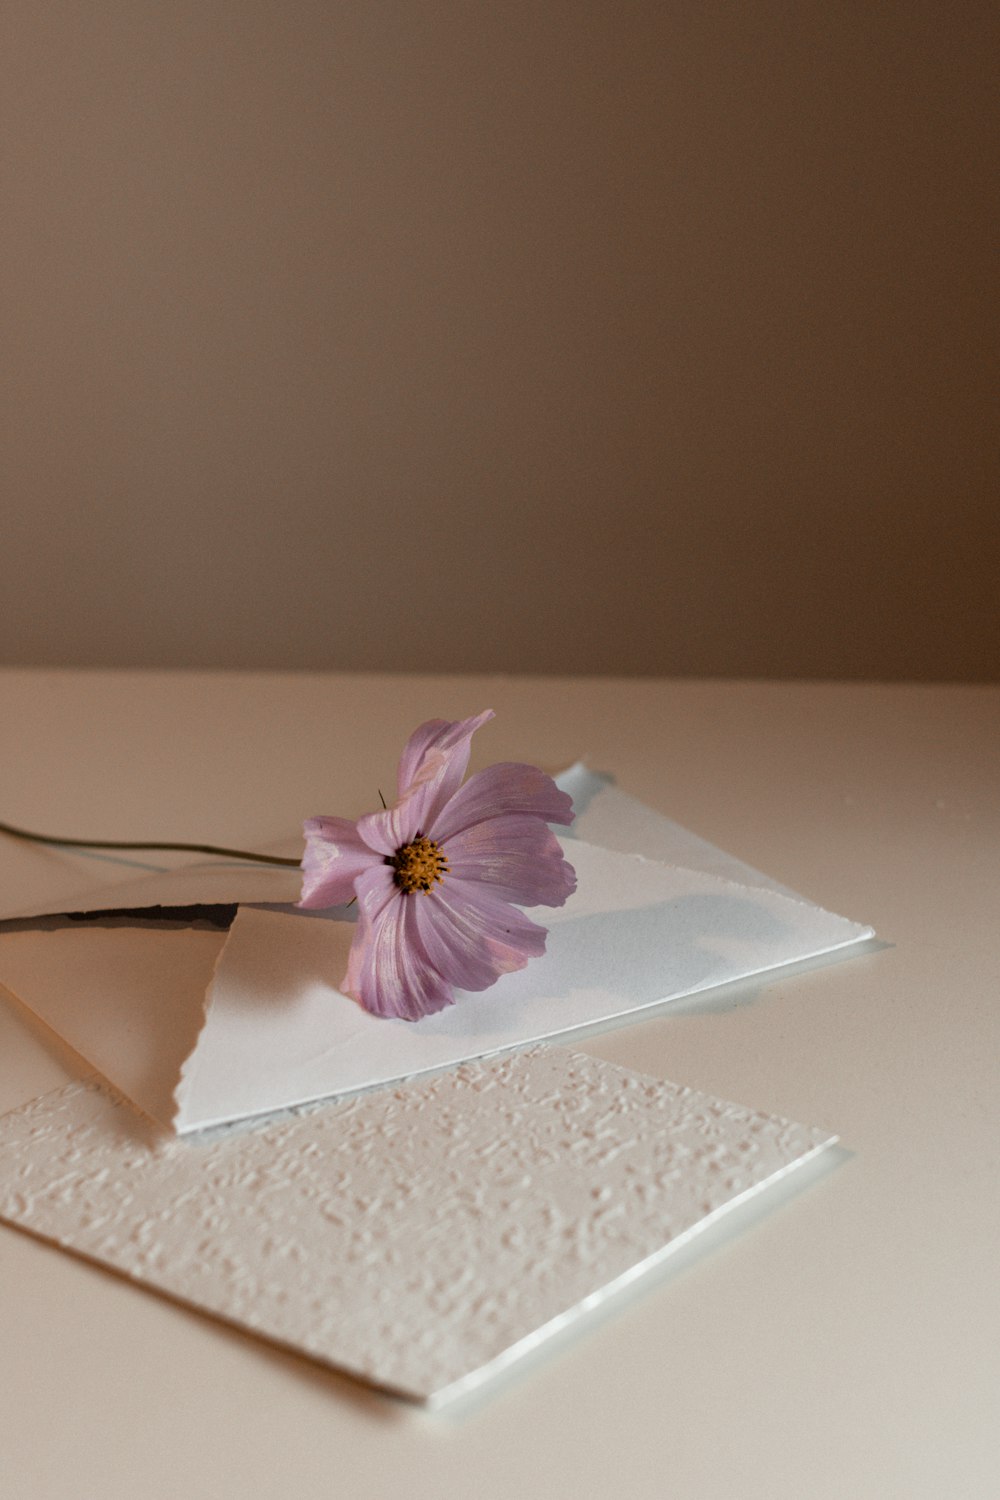 종이 위에 앉아 있는 분홍색 꽃